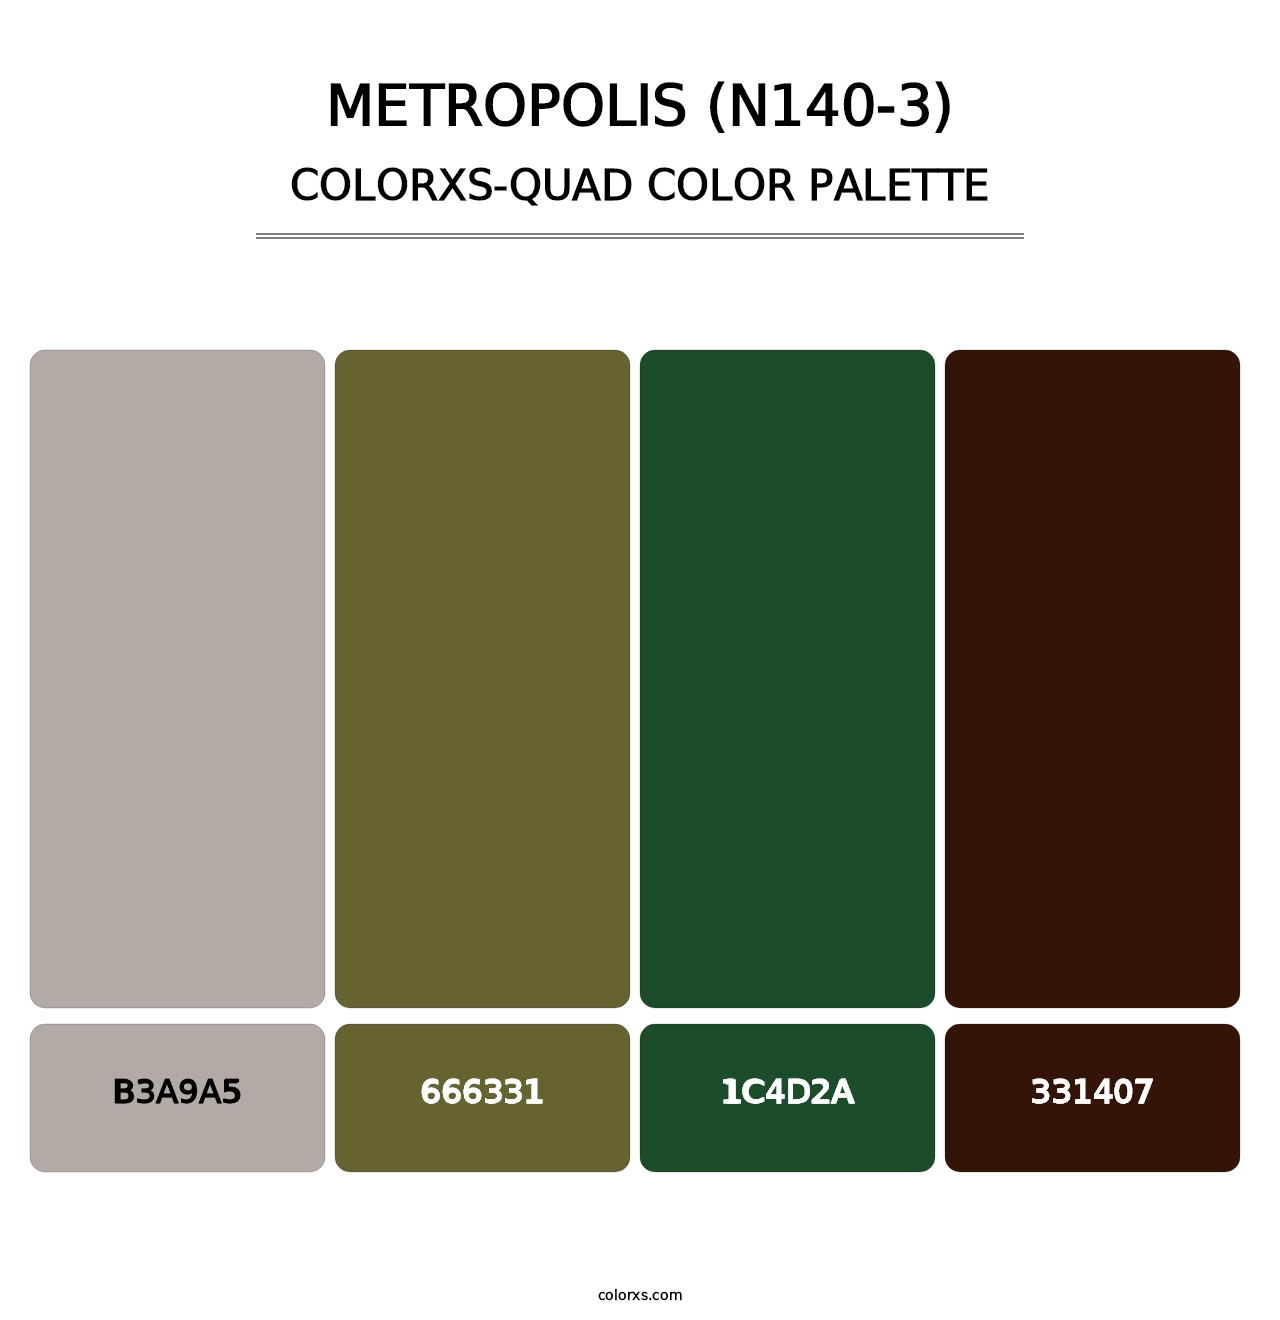 Metropolis (N140-3) - Colorxs Quad Palette